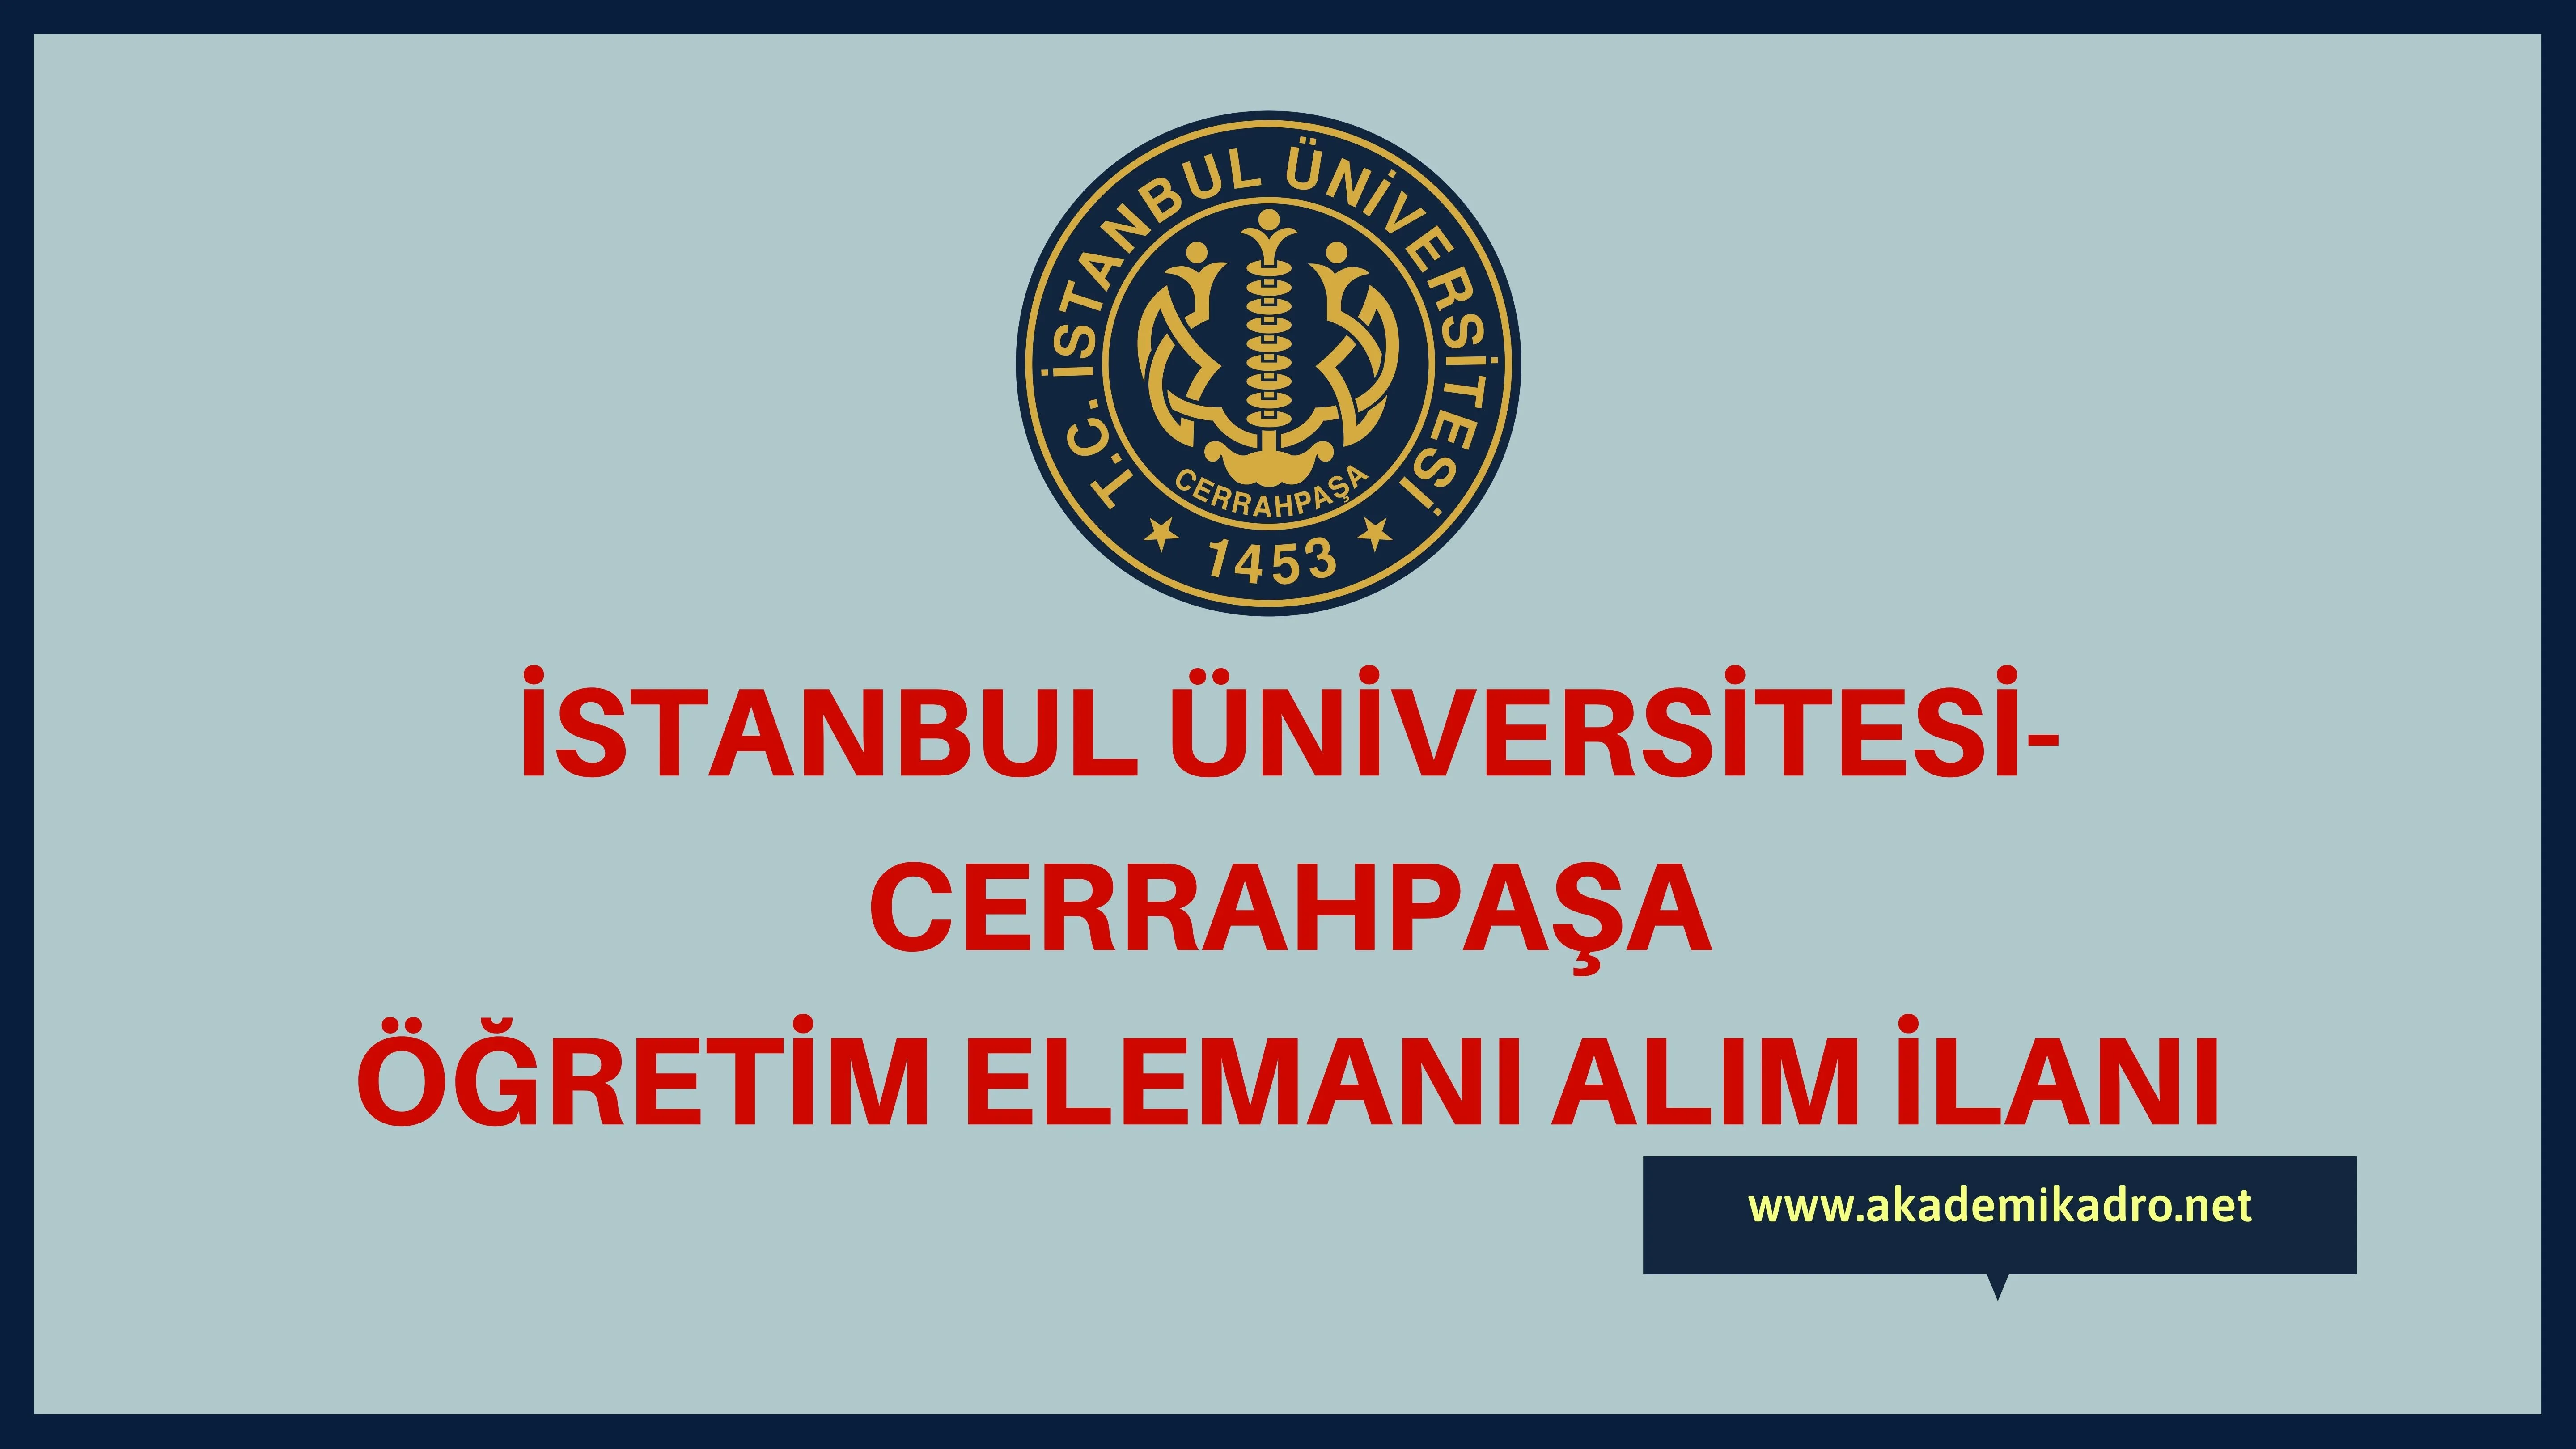 İstanbul Üniversitesi-Cerrahpaşa 6 Öğretim görevlisi ve 13 Araştırma görevlisi alacak.